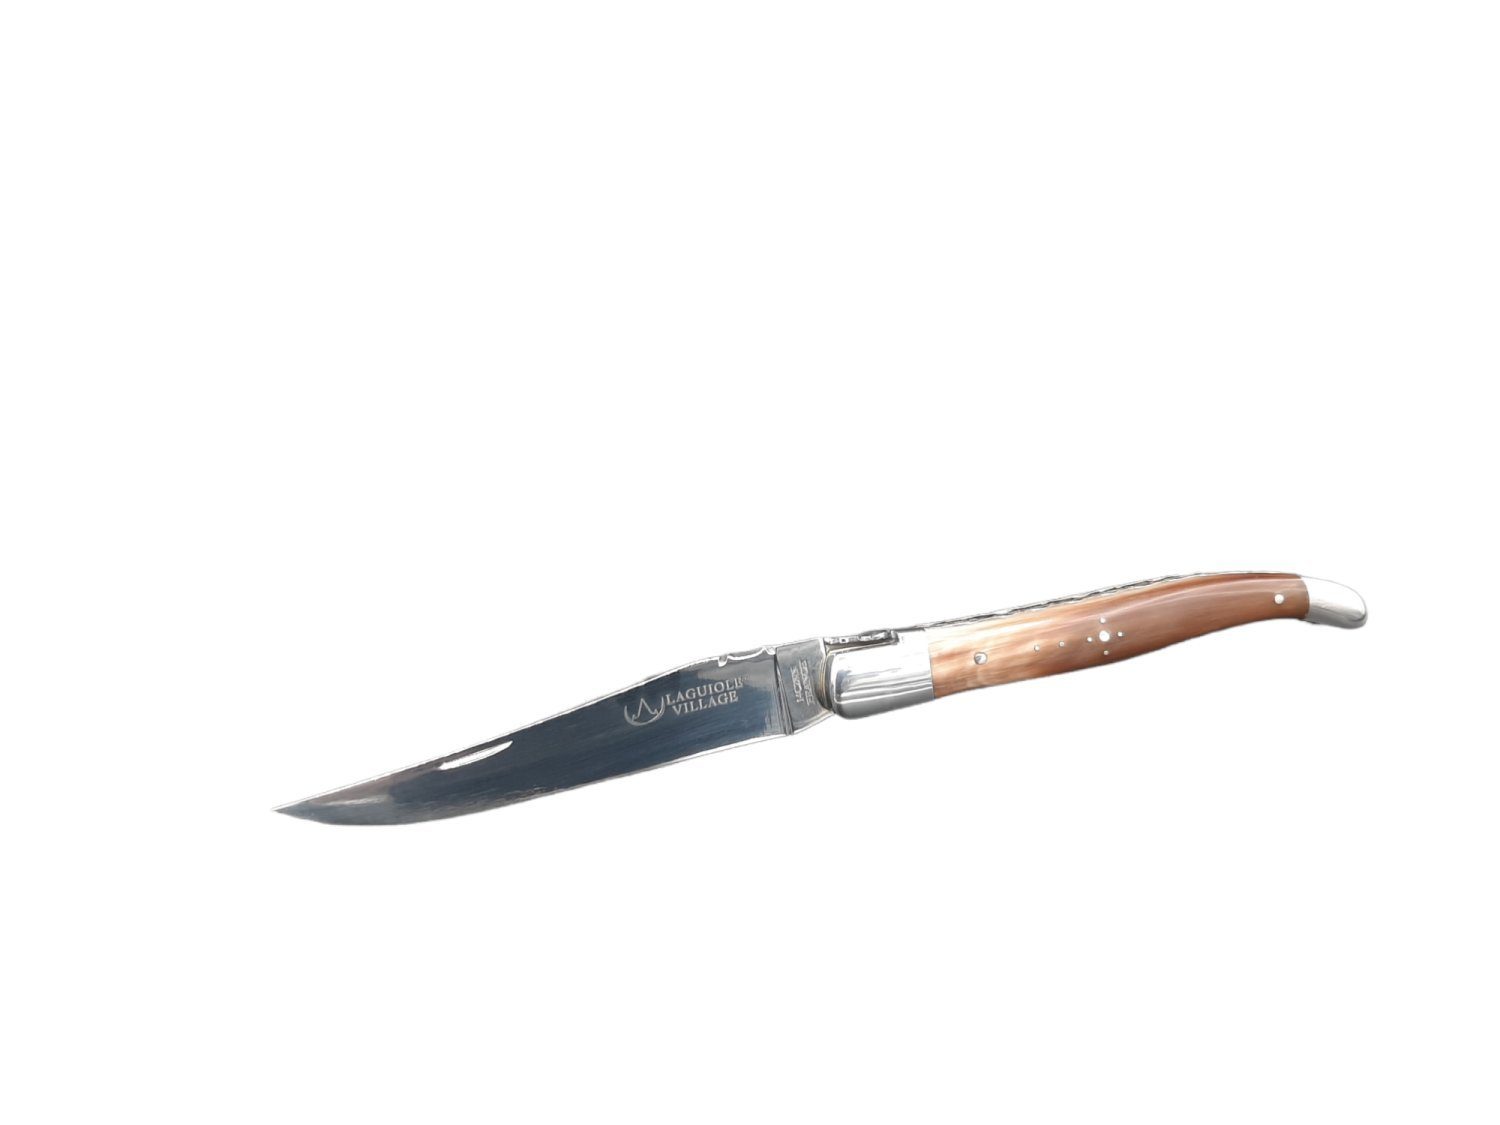 Laguiole Frankreich Taschenmesser Laguiole Village Taschenmesser mit Hornspitze Griff in 12cm | Taschenmesser